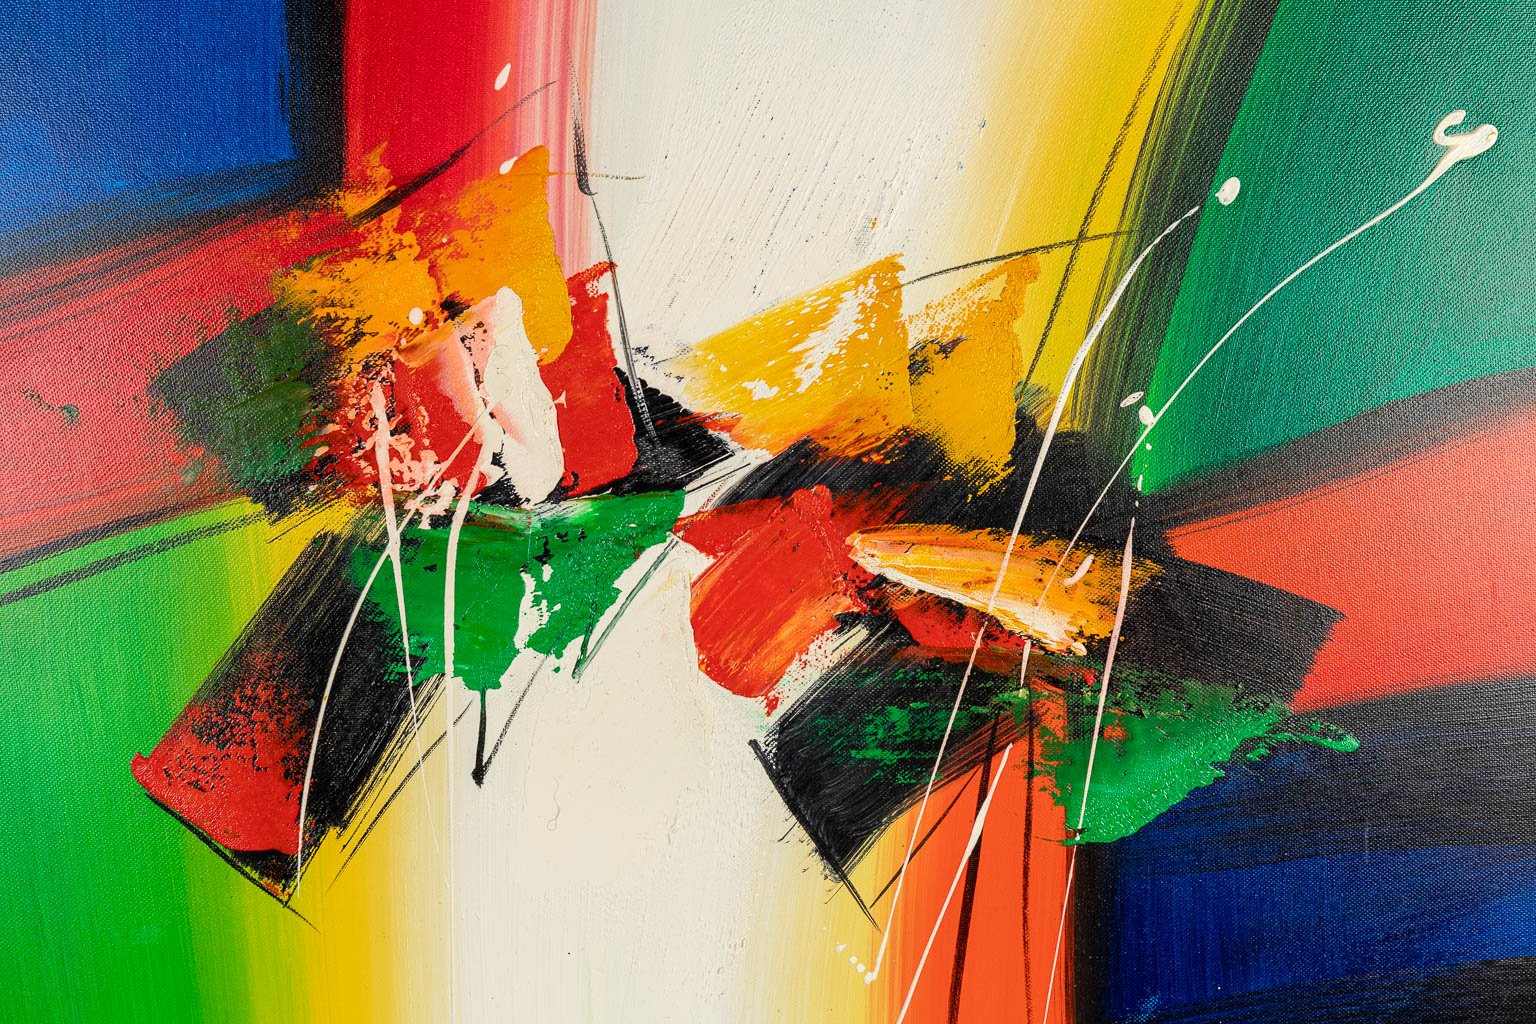 Lee COLE (1954) 'No title' een abstract schilderij, acryl op doek. (65 x 54 cm)